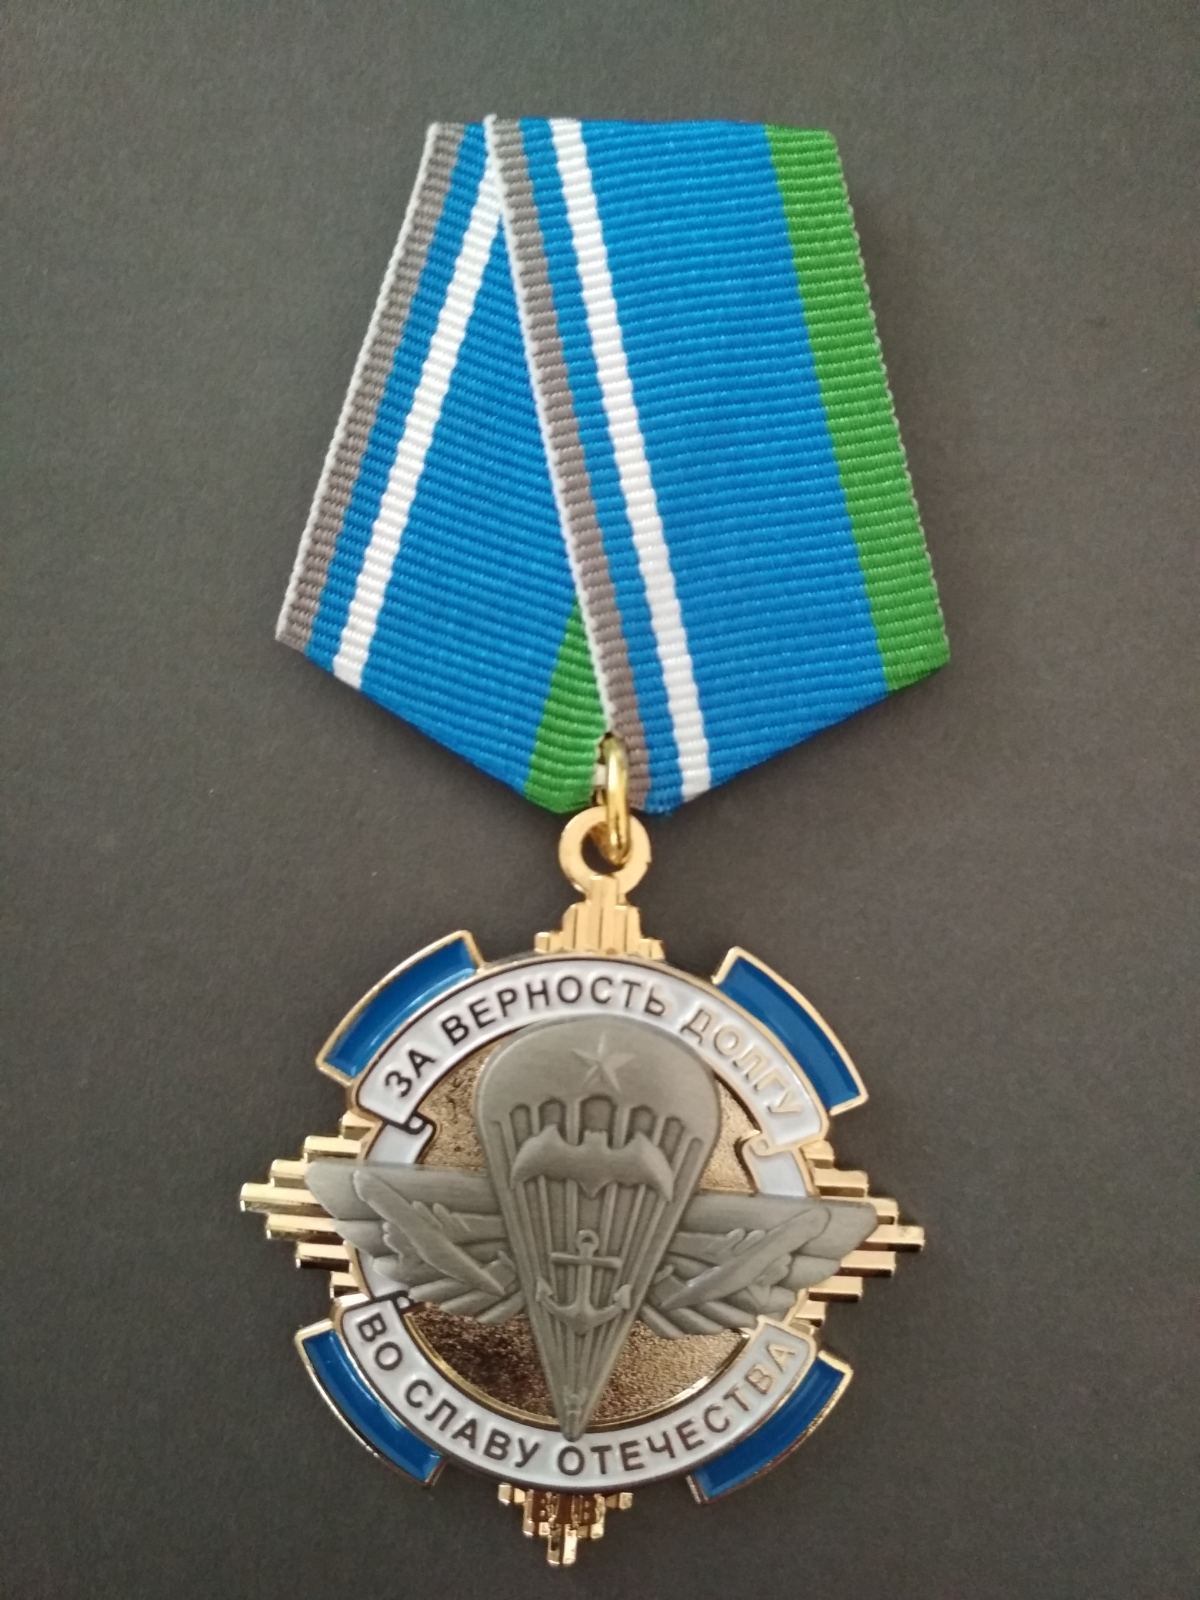 Медаль "За верность долгу, во славу отечеству".